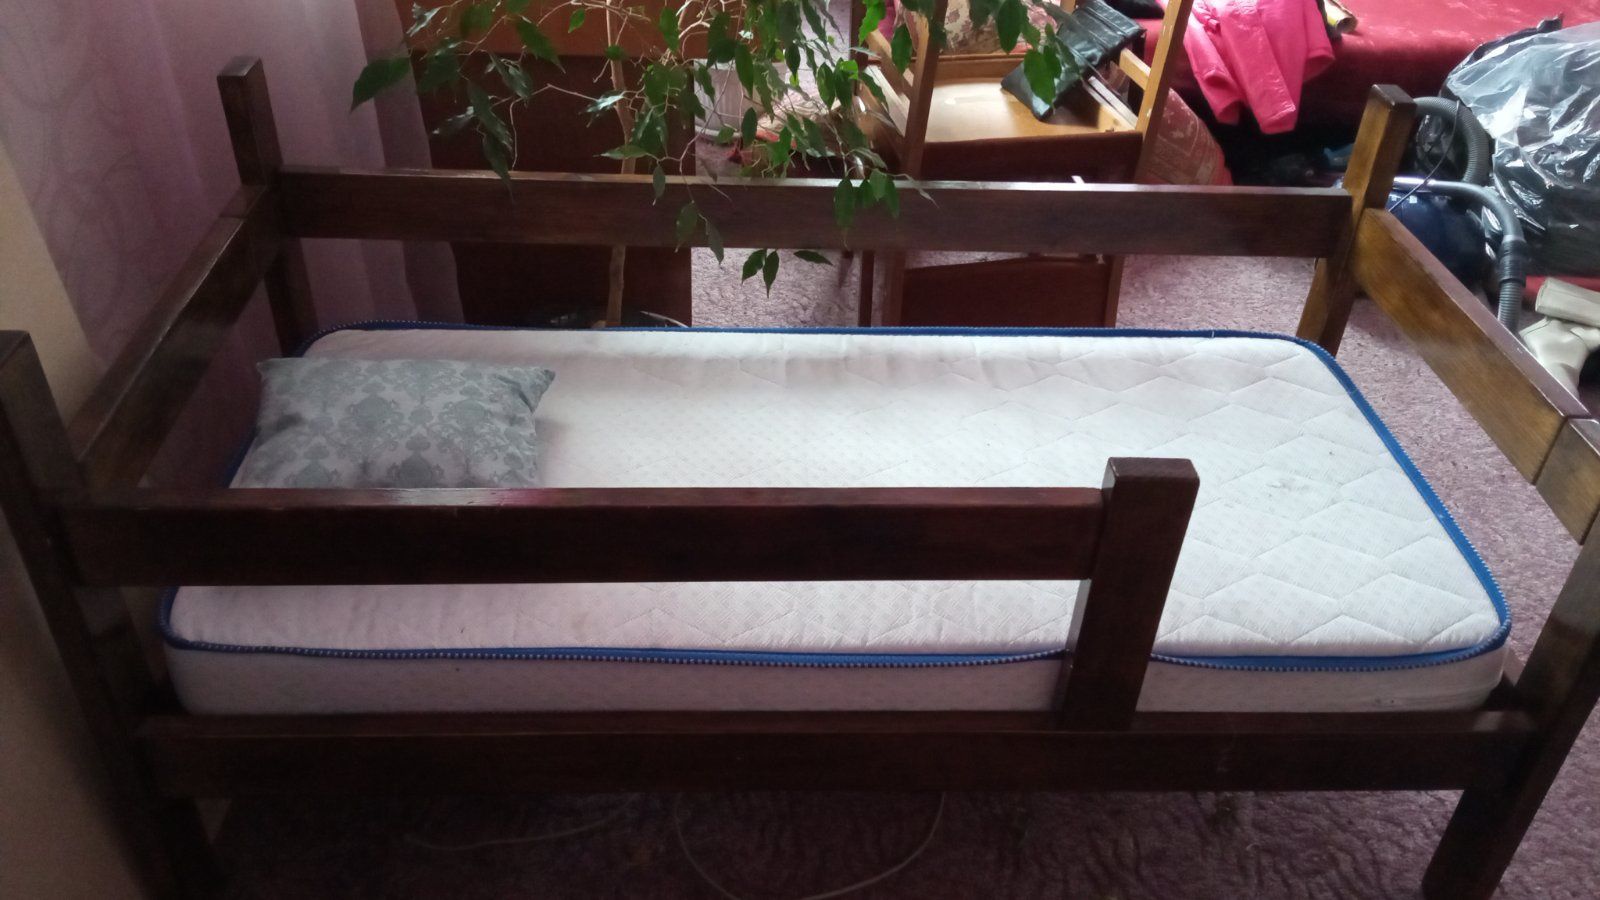 Продается детская кроватка с матрасом